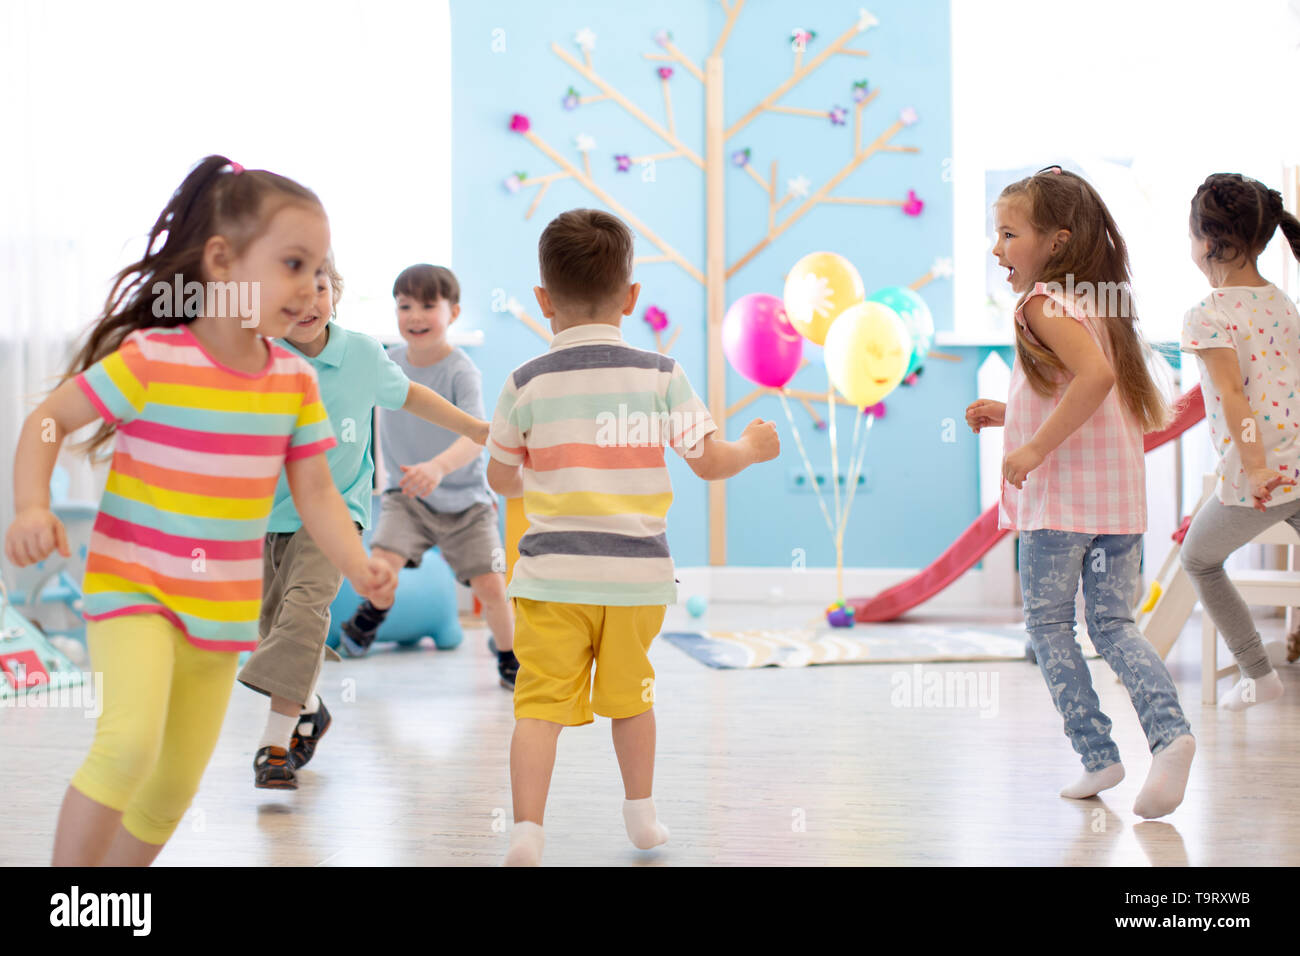 Infanzia, il tempo libero e il concetto di popolo - gruppo di bambini felici giocando Tag gioco e in esecuzione in ambienti interni Foto Stock